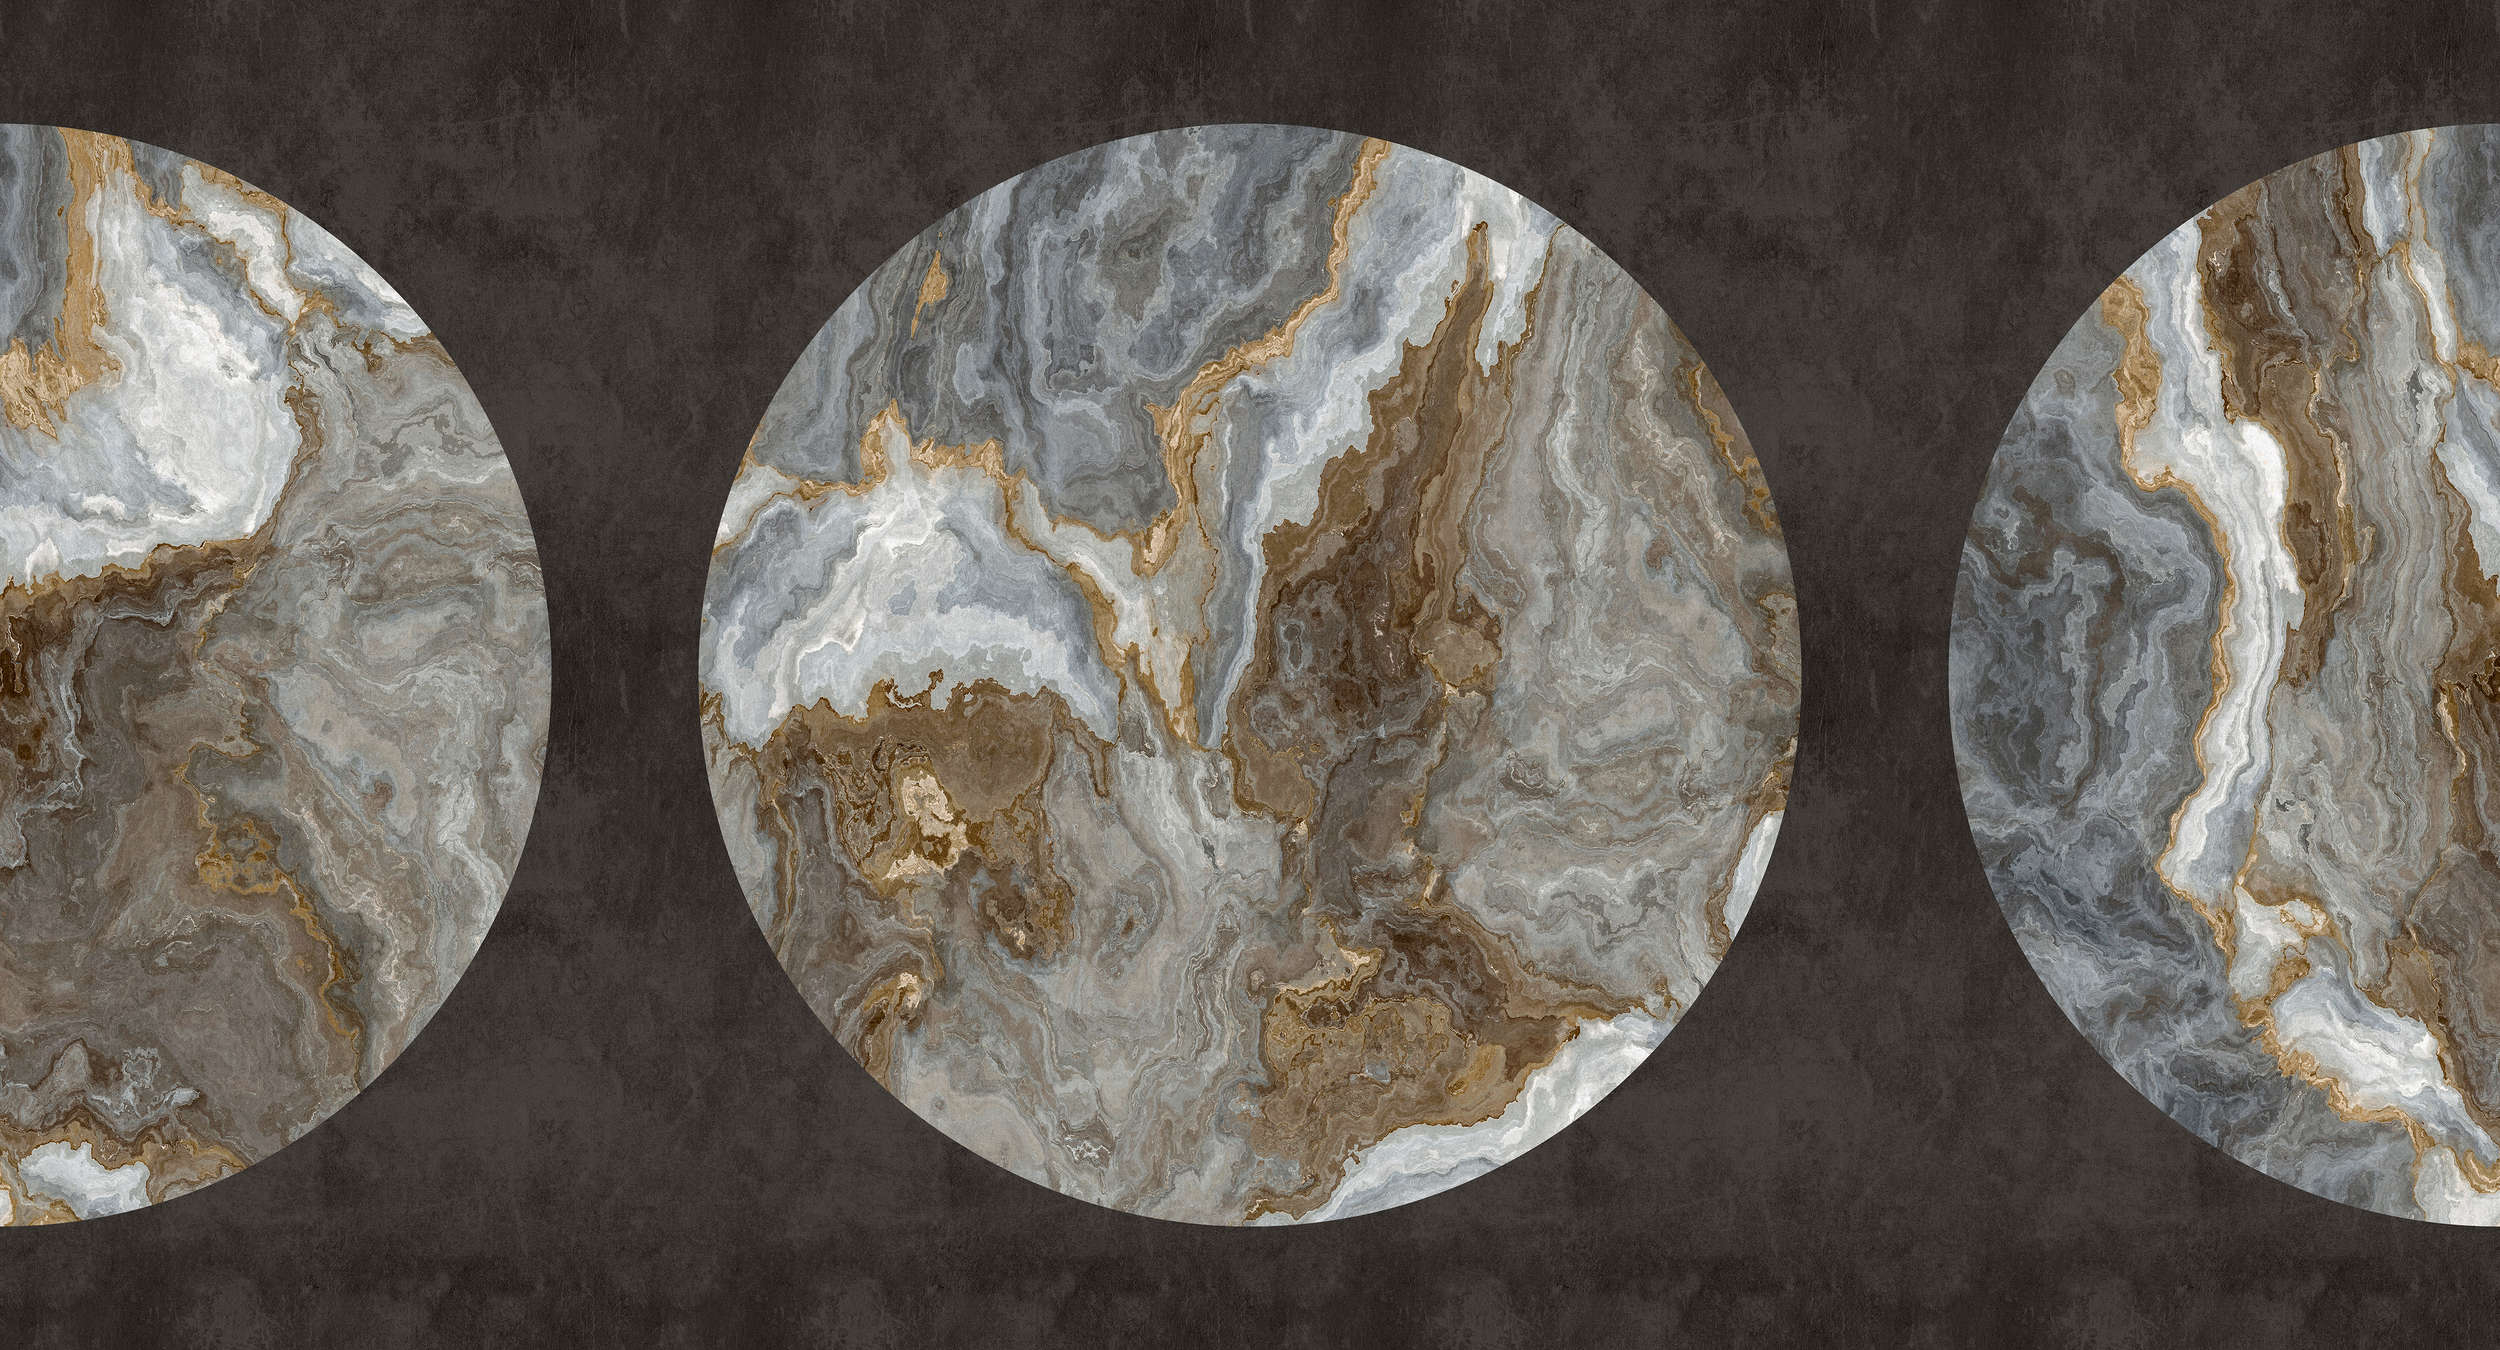             Luna 1 - Carta da parati in marmo con design a cerchio e aspetto intonaco nero
        